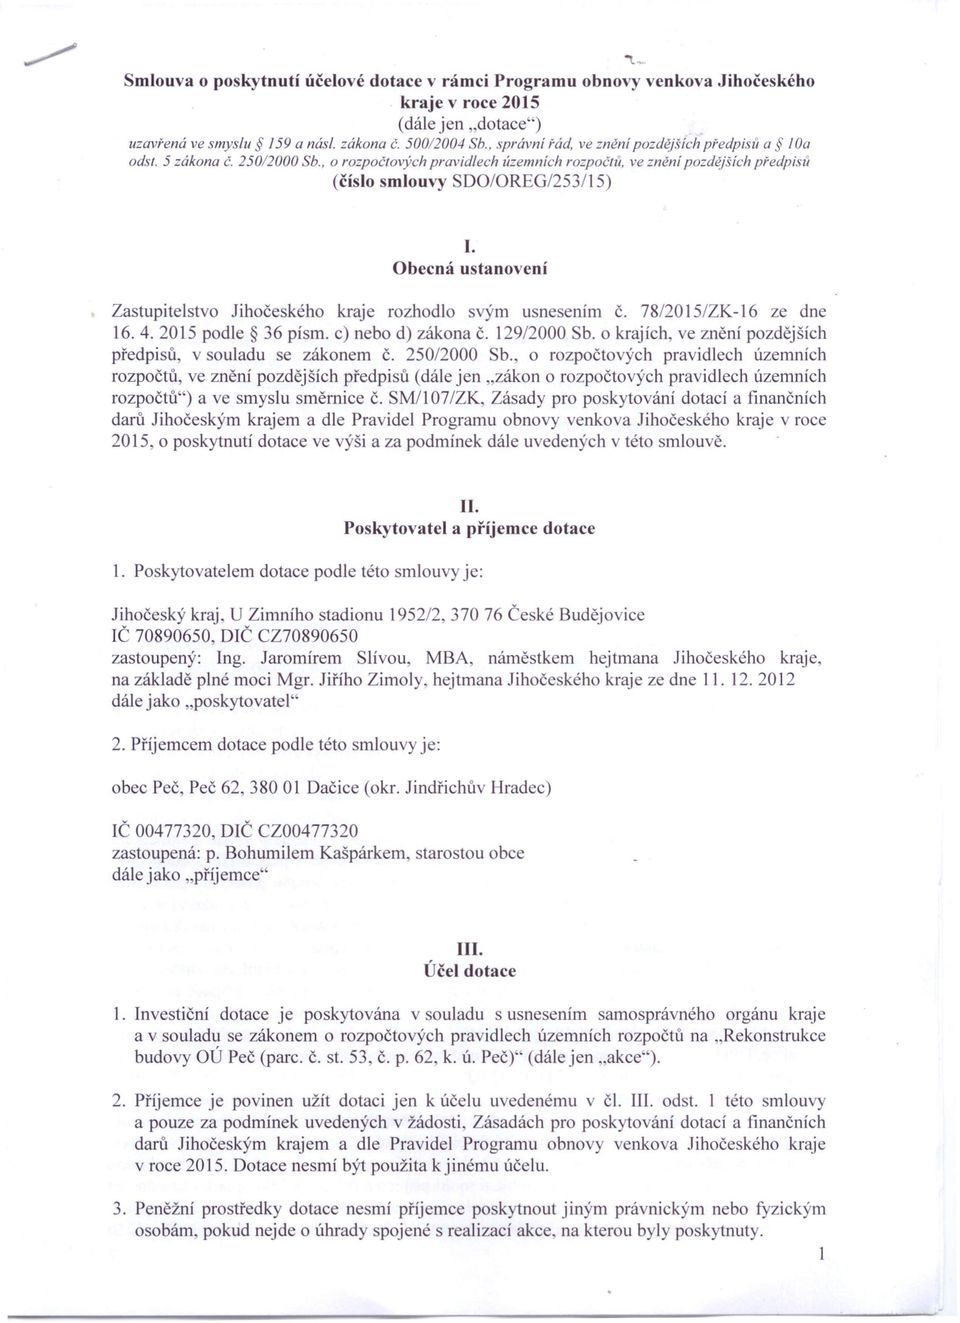 ustanovení Zastupitelstvo Jihočeského kraje rozhodlo svým usnesením Č. 78/2015/ZK-16 ze dne 16.4.2015 podle 36 písmo c) nebo d) zákona Č. 129/2000 Sb.